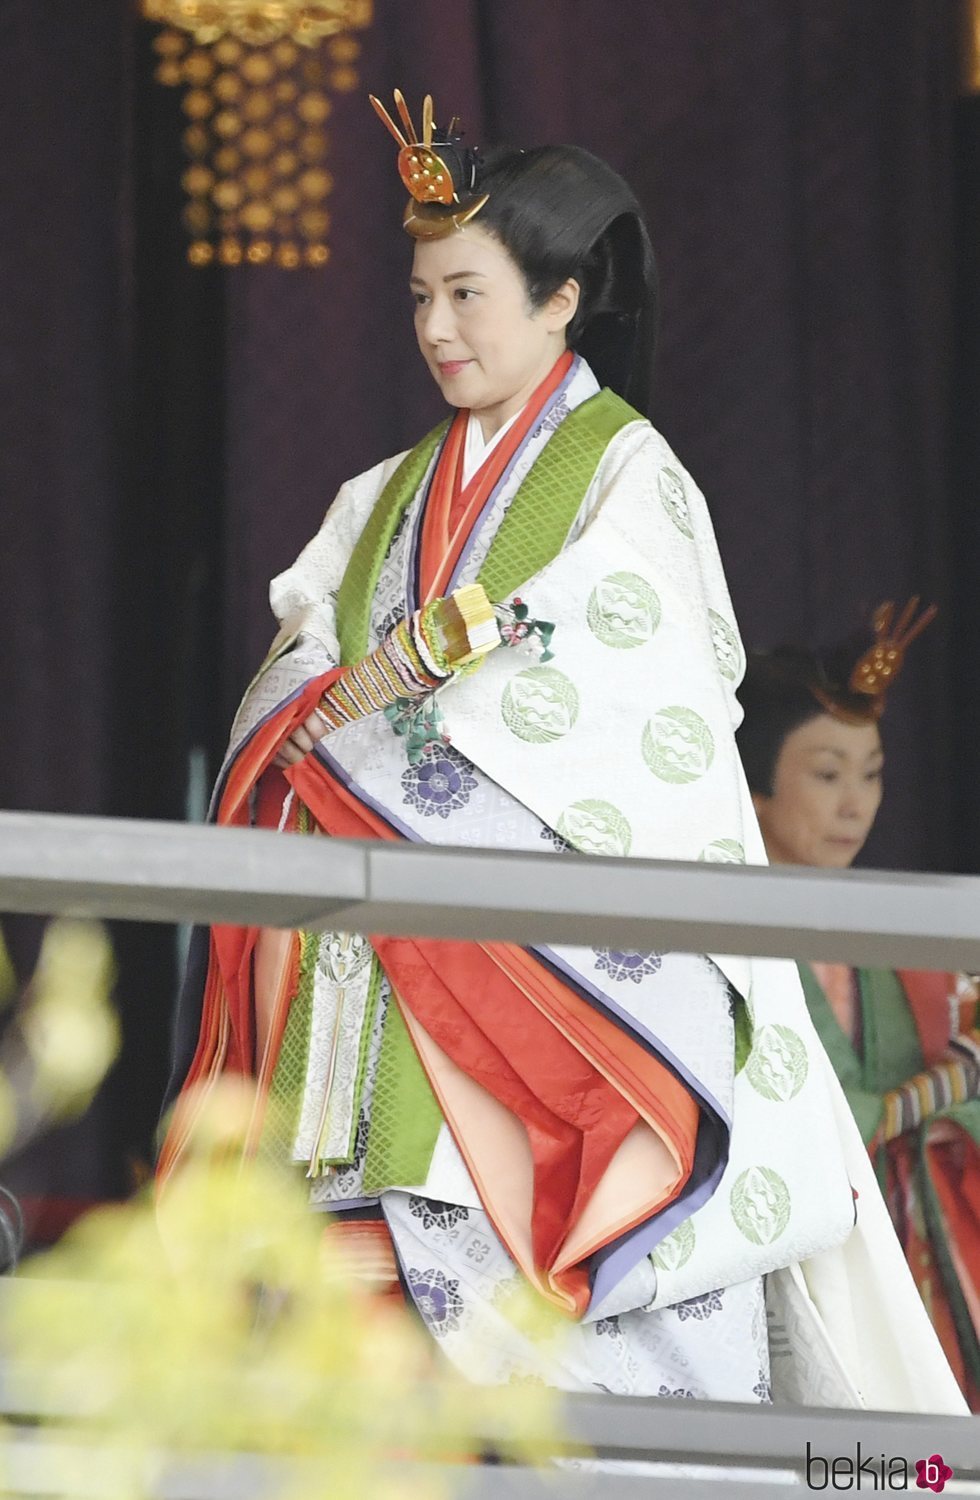 Masako de Japón en la ceremonia de entronización de Naruhito de Japón